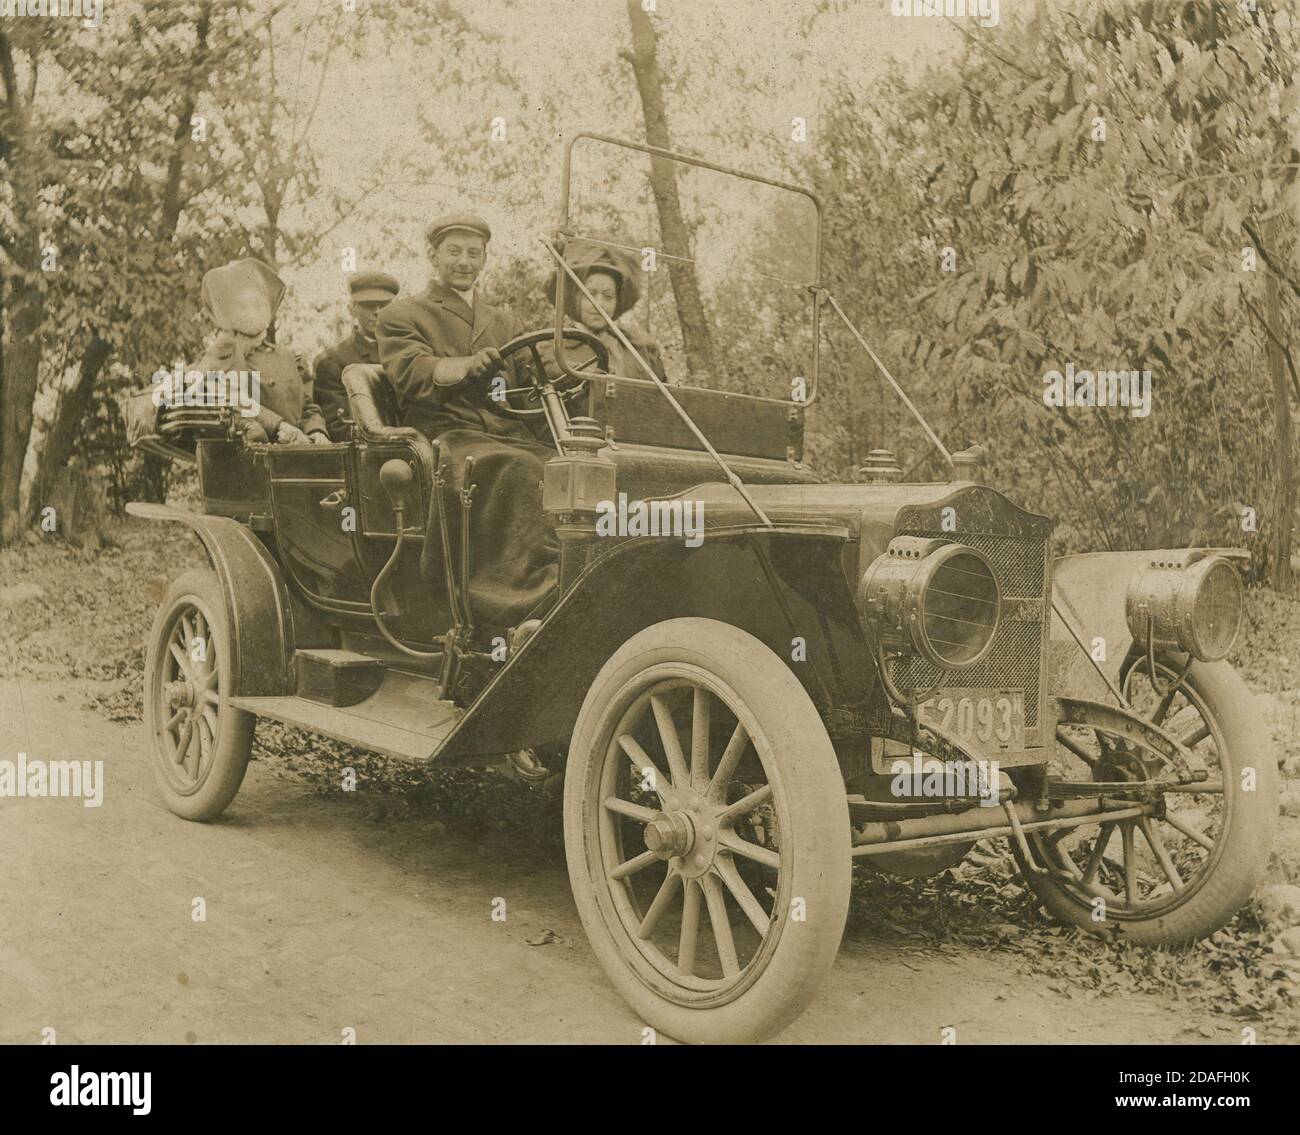 Antica fotografia c1910. La vettura sembra essere una Maxwell Model Q, con una targa New York di prima generazione (1910). FONTE: FOTOGRAFIA ORIGINALE Foto Stock